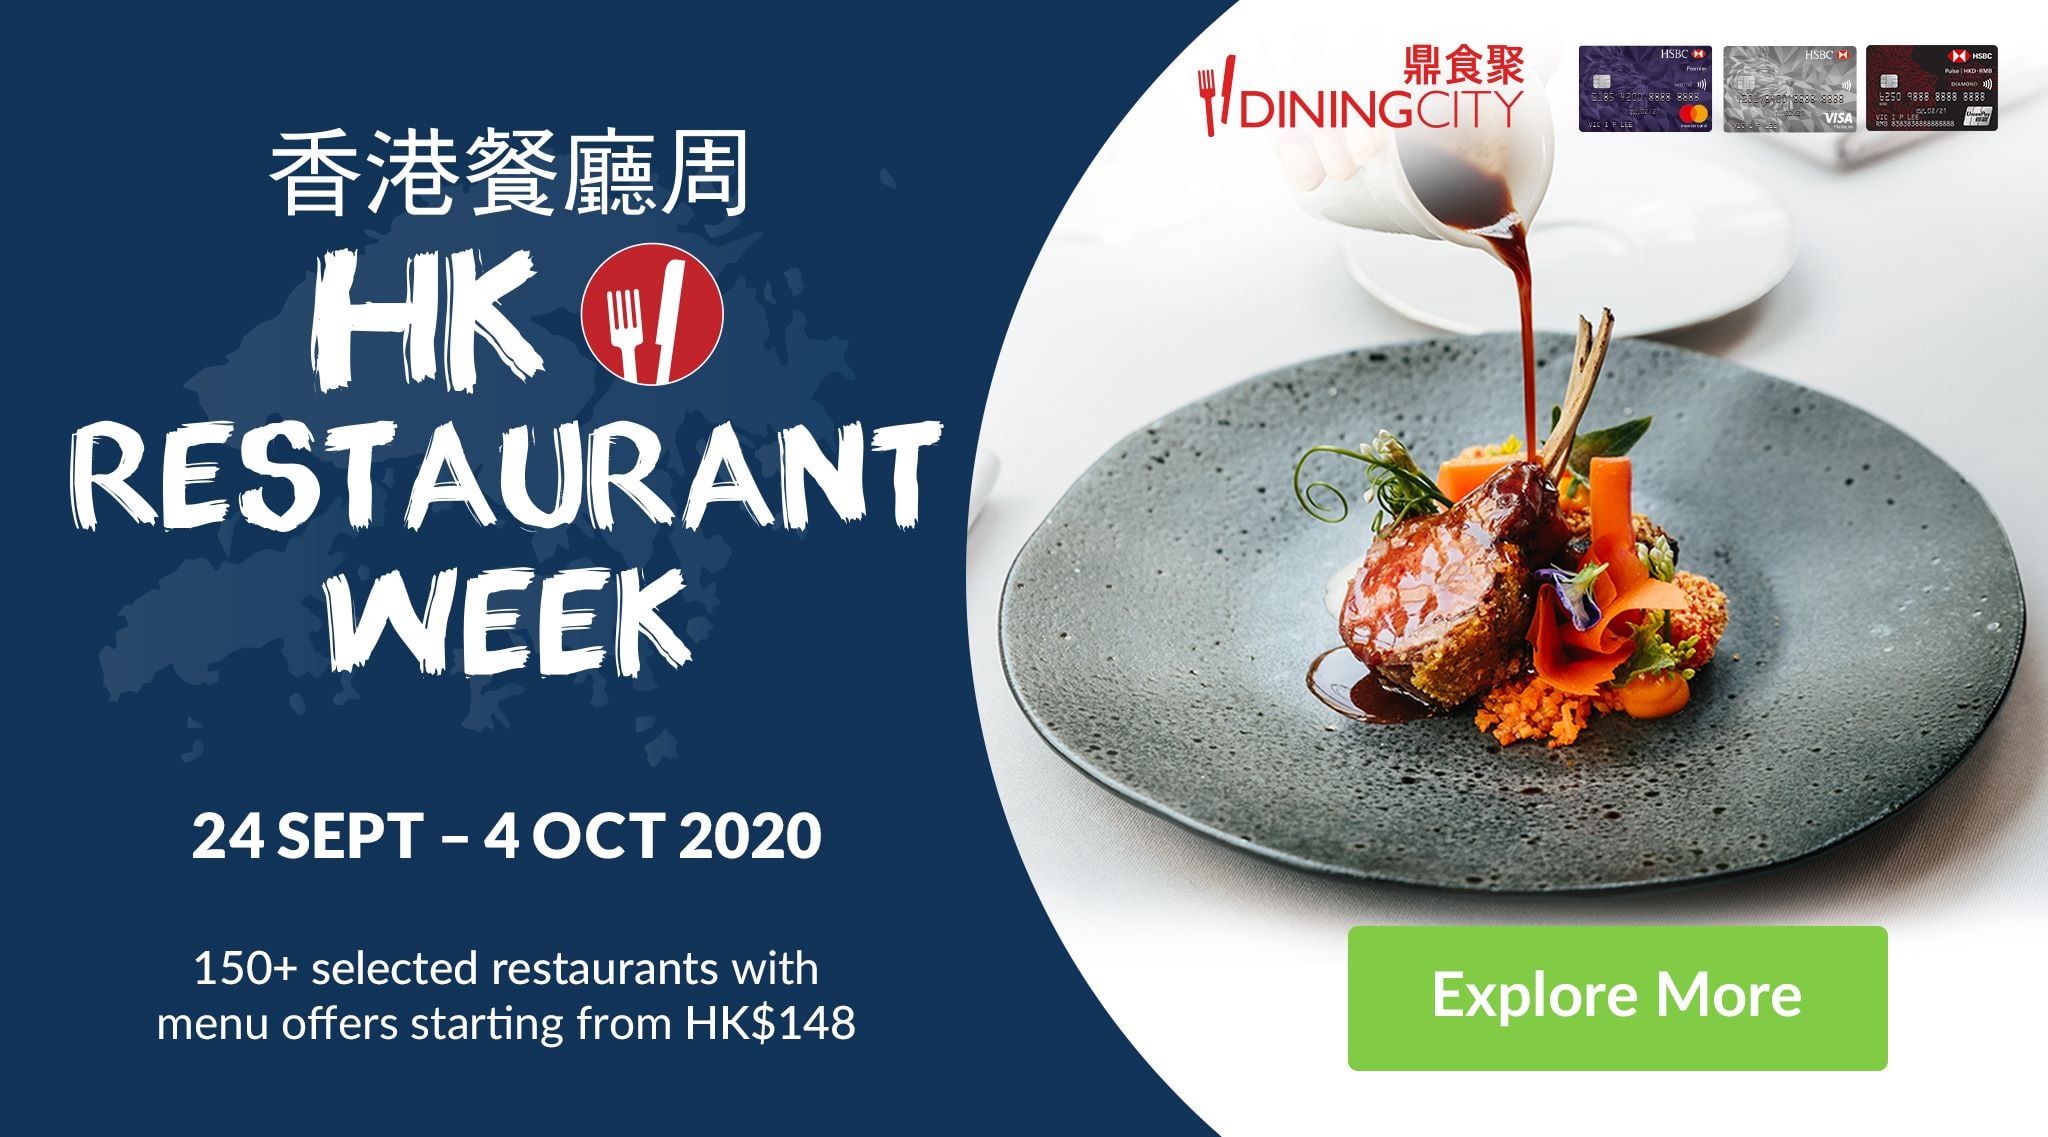 Join FINDS Hong Kong Restaurant Week Autumn 2020, special menu from 24 Sep-4 Oct